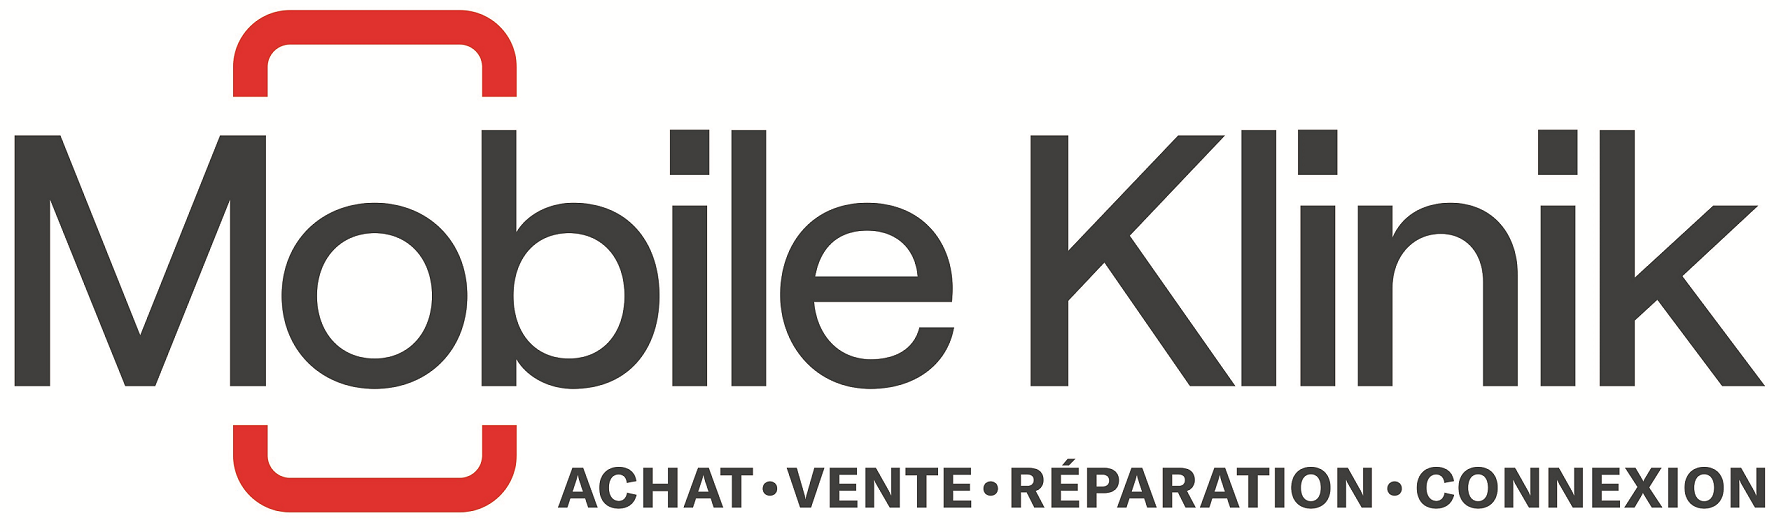 Mobile-Klinik-French.png